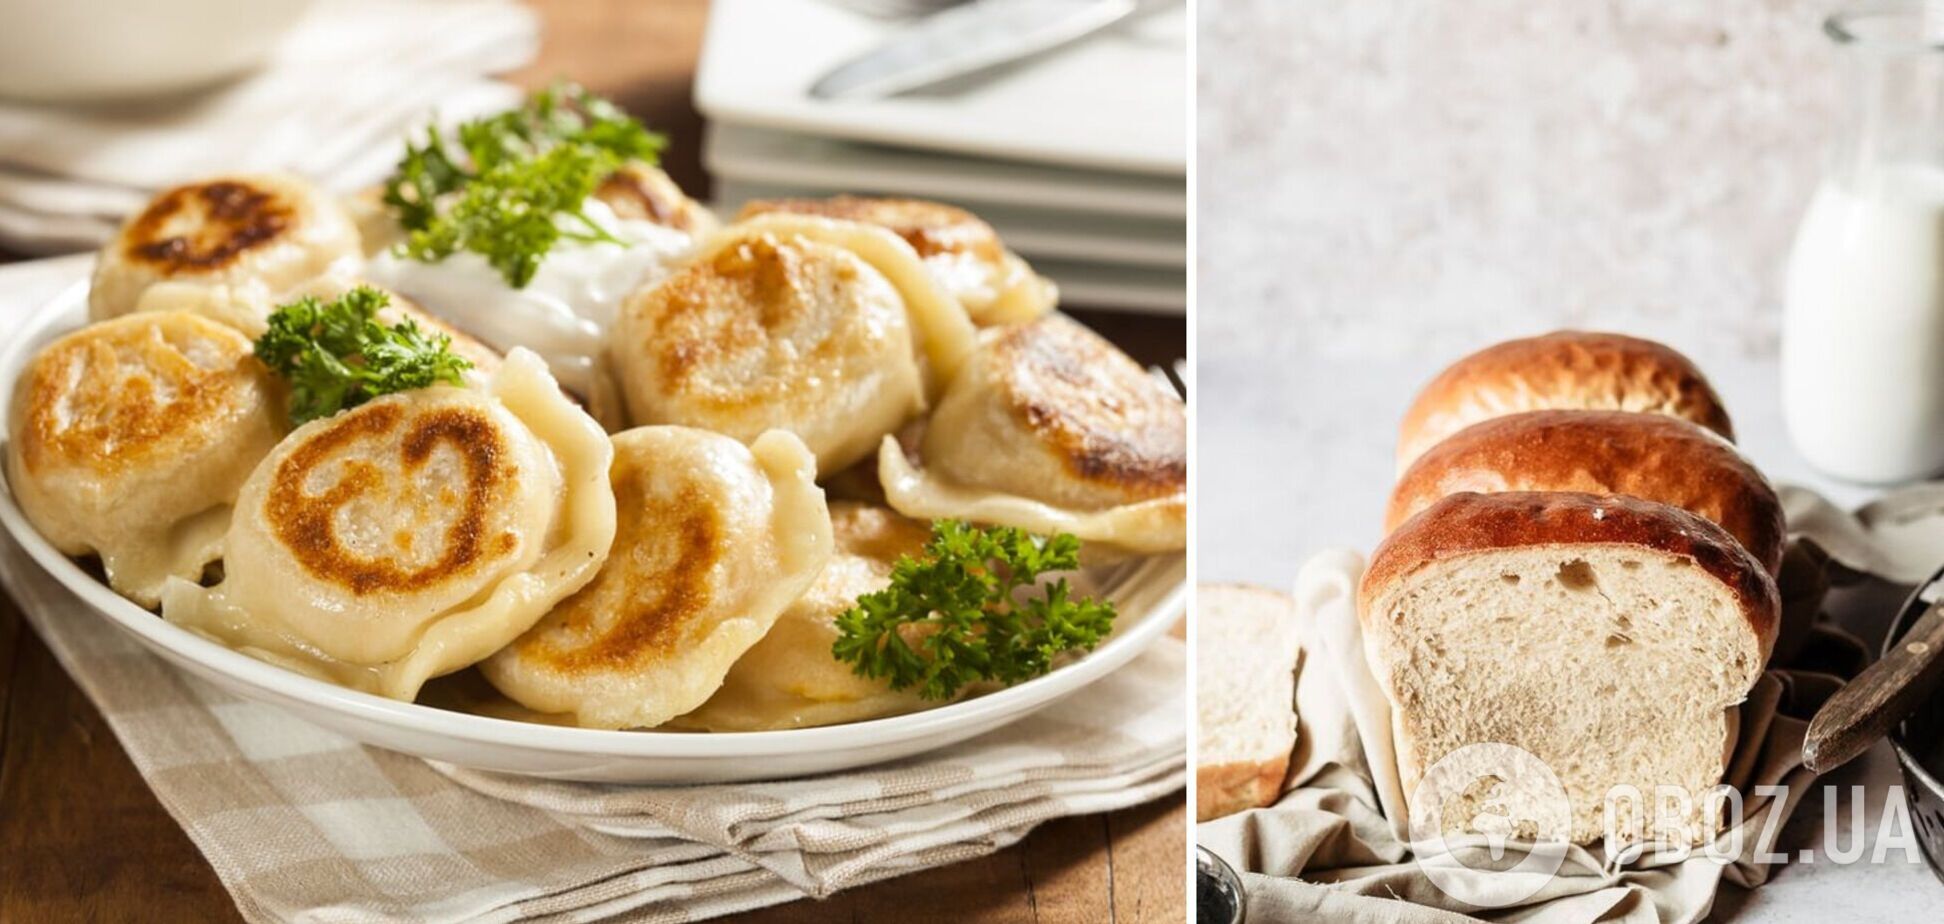 Пищевые привычки украинцев: обед из трех блюд и обязательно с хлебом